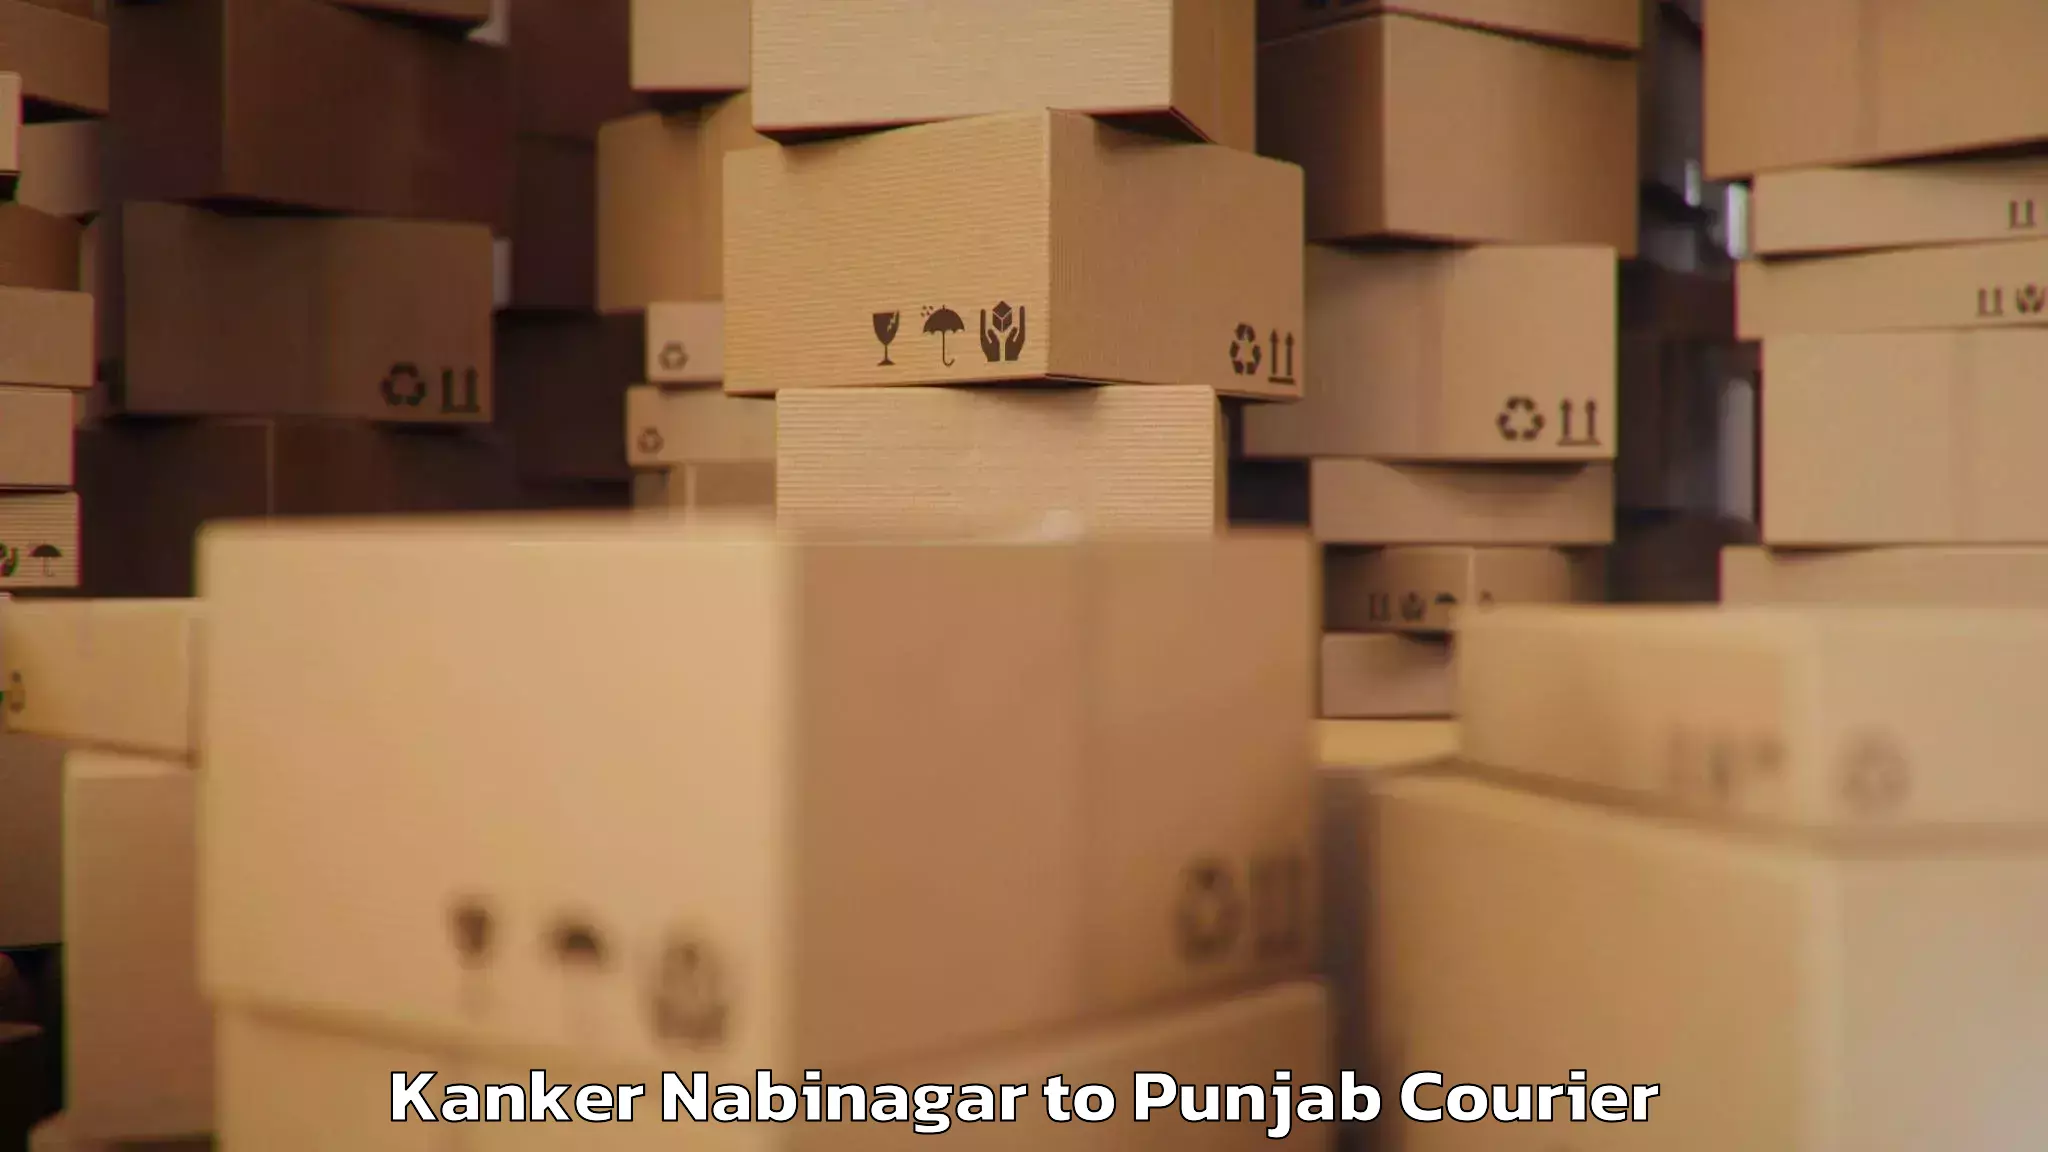 Baggage shipping optimization Kanker Nabinagar to Mukerian